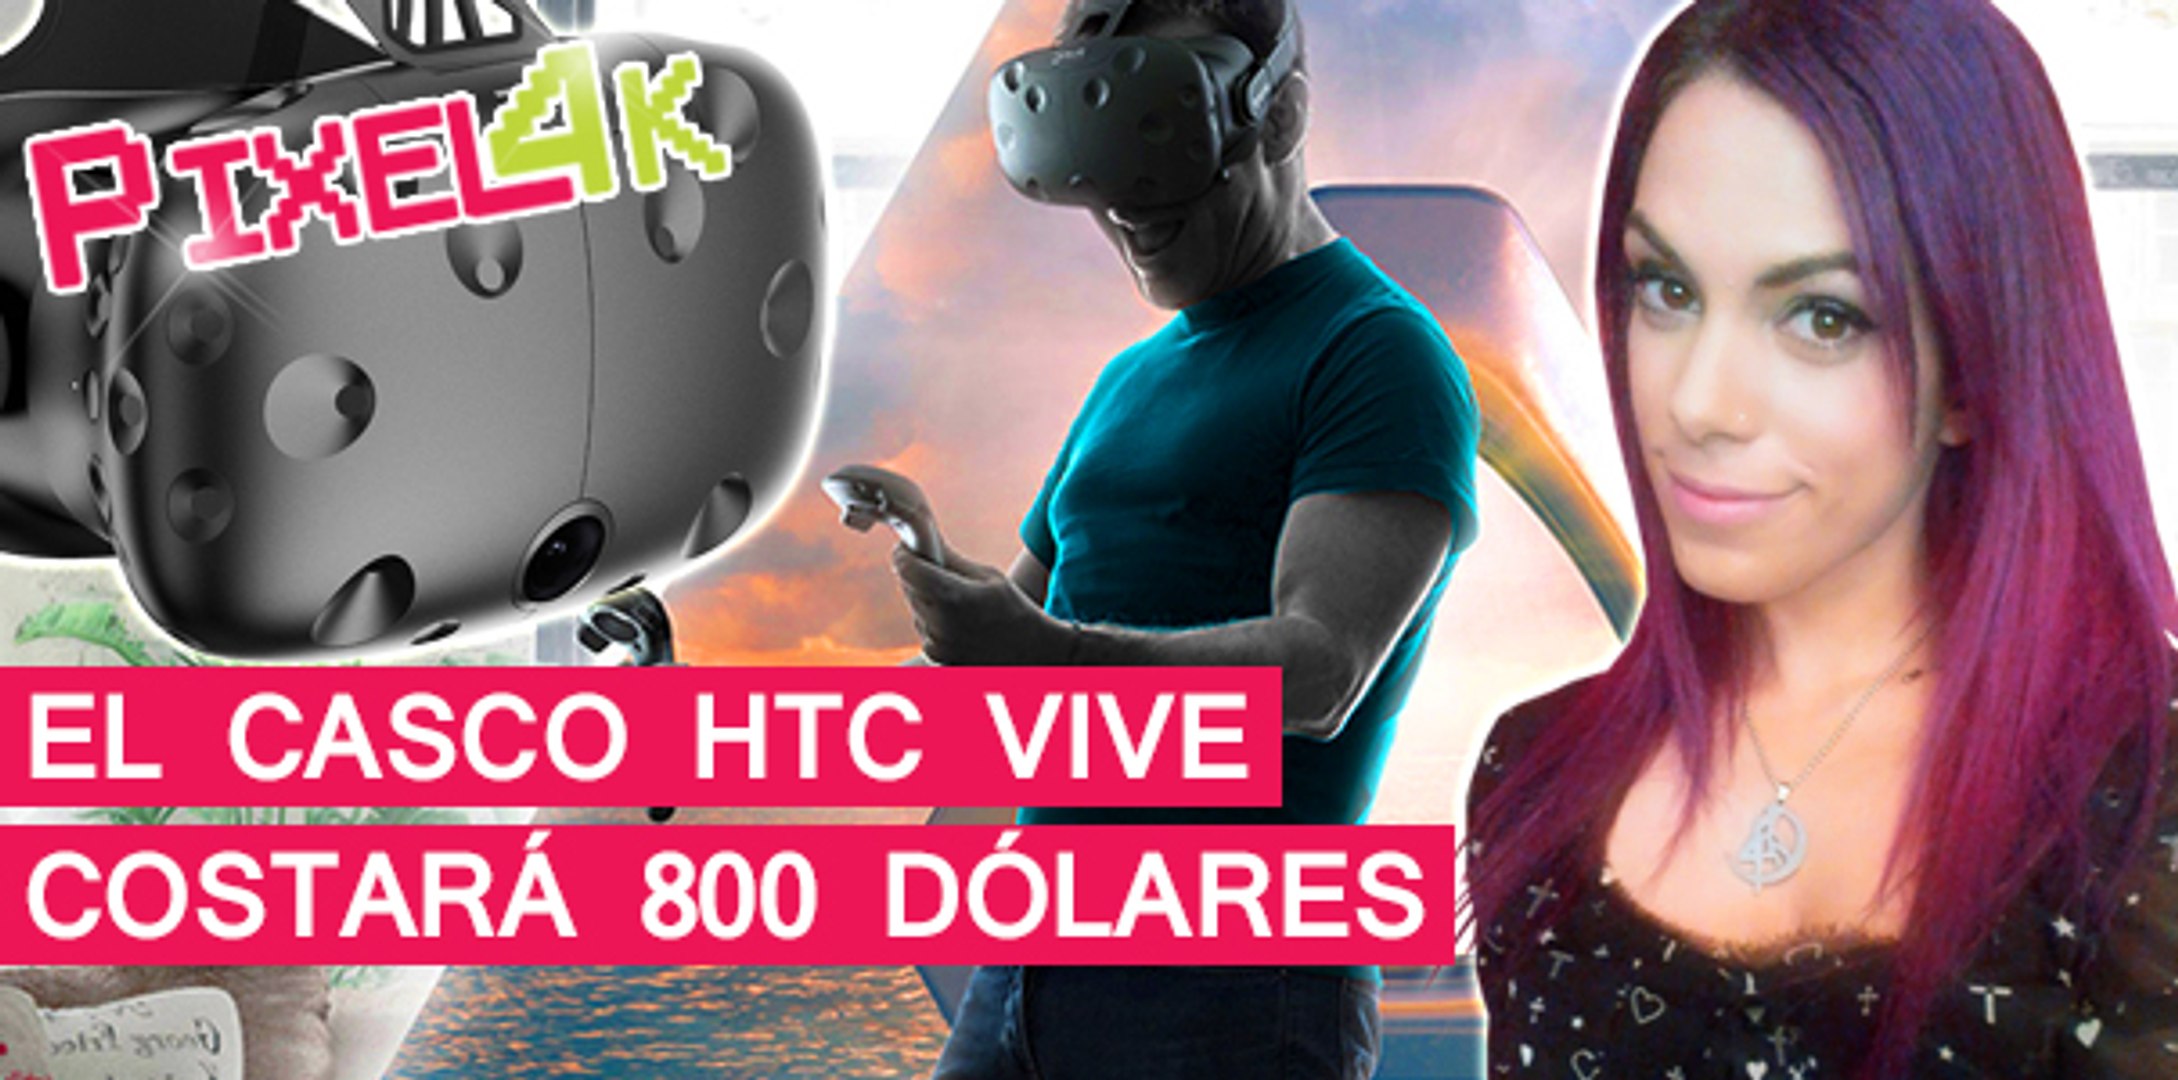 El Píxel 4K: El casco HTC Vive costará 800 dólares - Vídeo Dailymotion